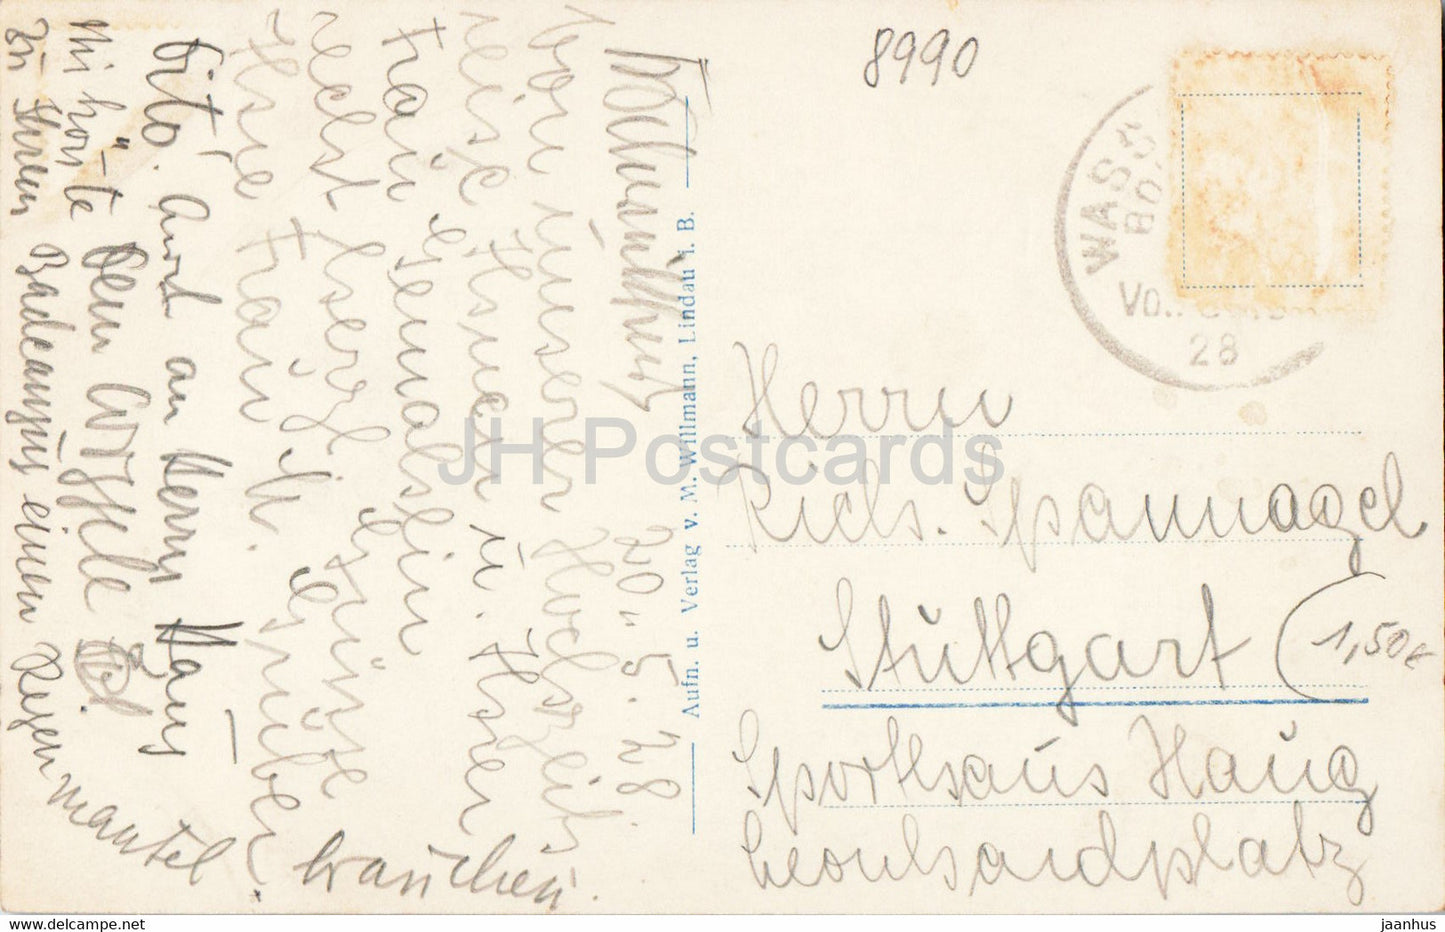 Lindau - Hafenausfahrt - Scesaplana - Drei Schwestern - Leuchtturm - alte Postkarte - 1928 - Deutschland - gebraucht